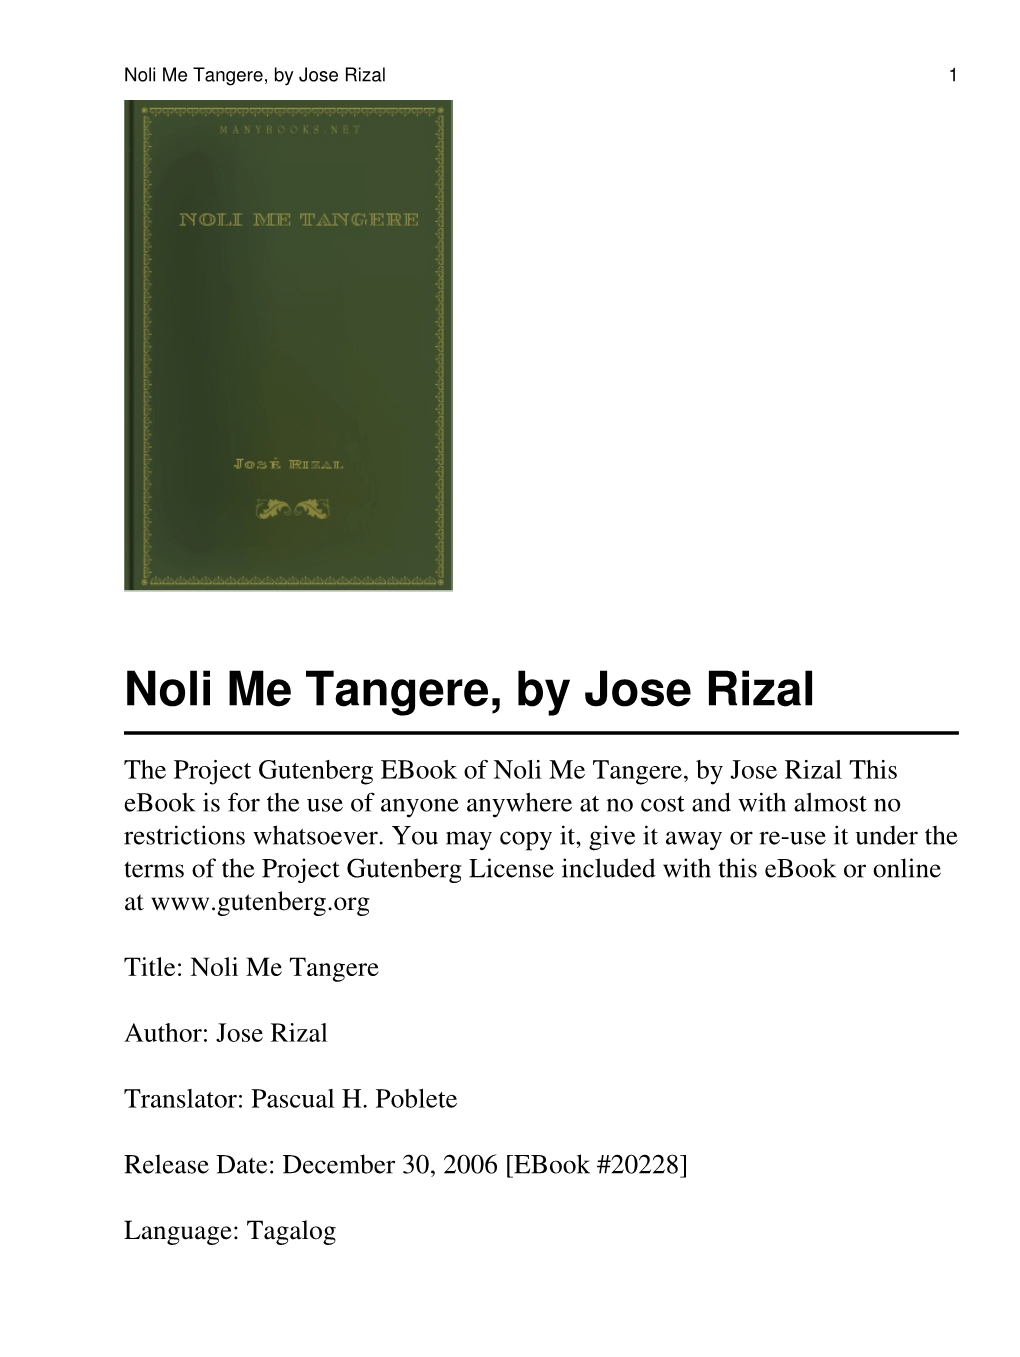 Noli Me Tangere By Jose Rizal 1 DocsLib